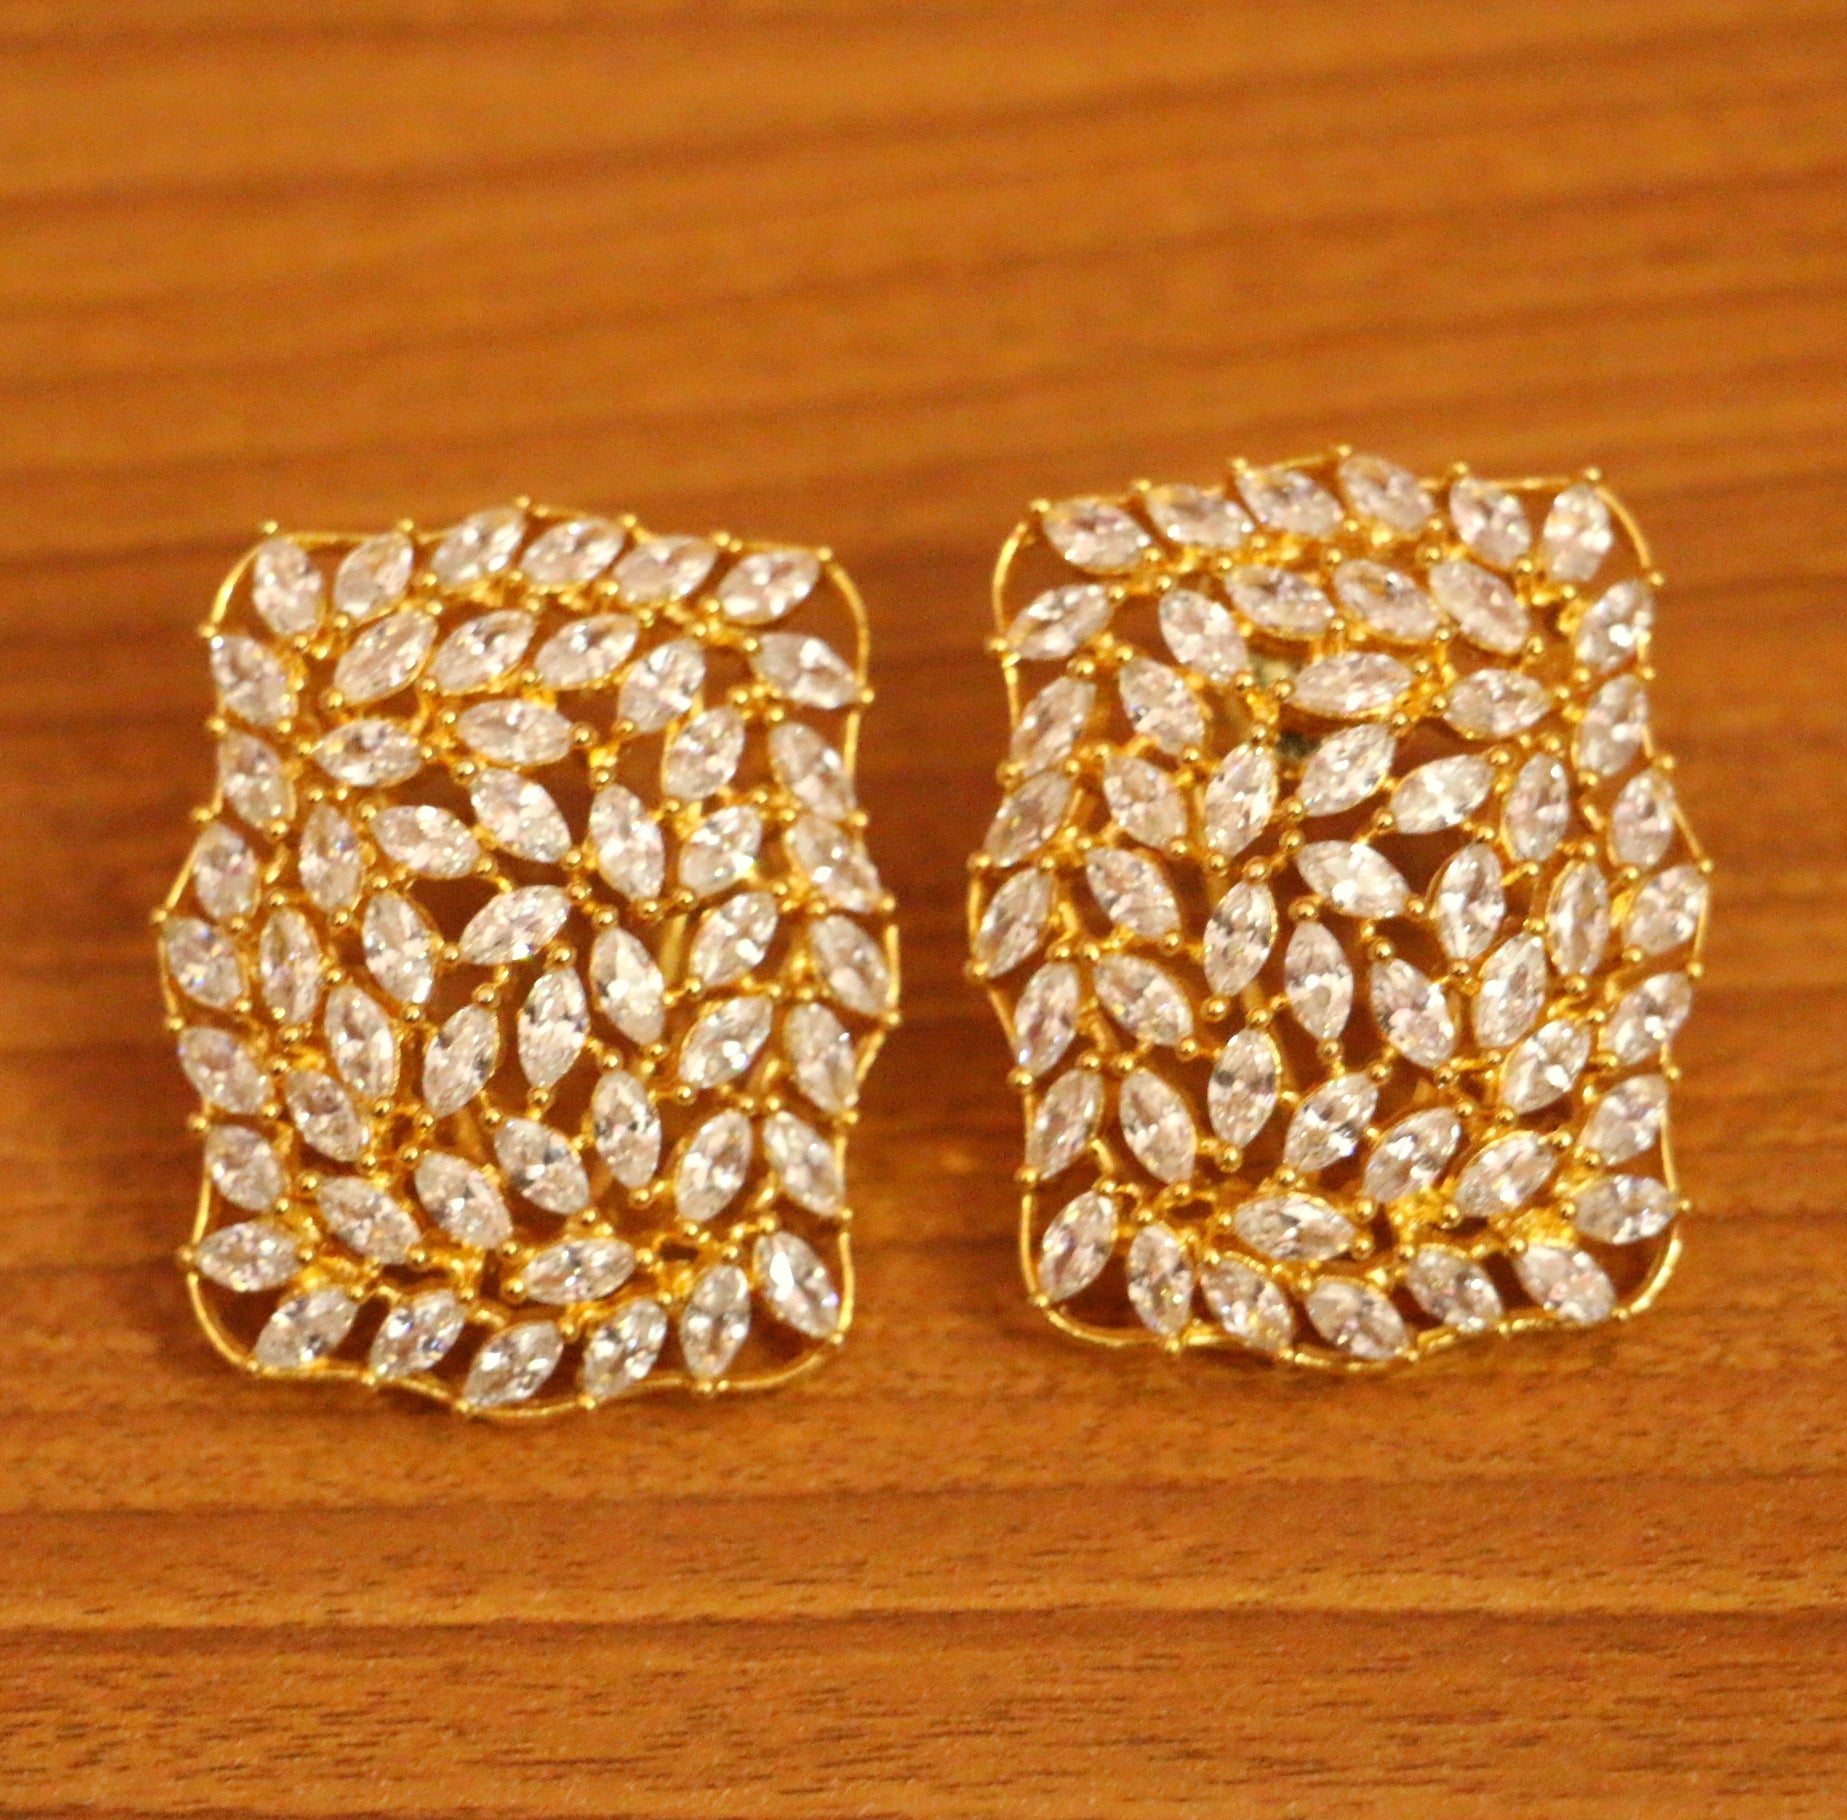 Vinishq White & Pink Stone Earrings for Girls and Women's AD Stone Earrings Diamond  Earrings Big Flowers Design White Diamond With White Back